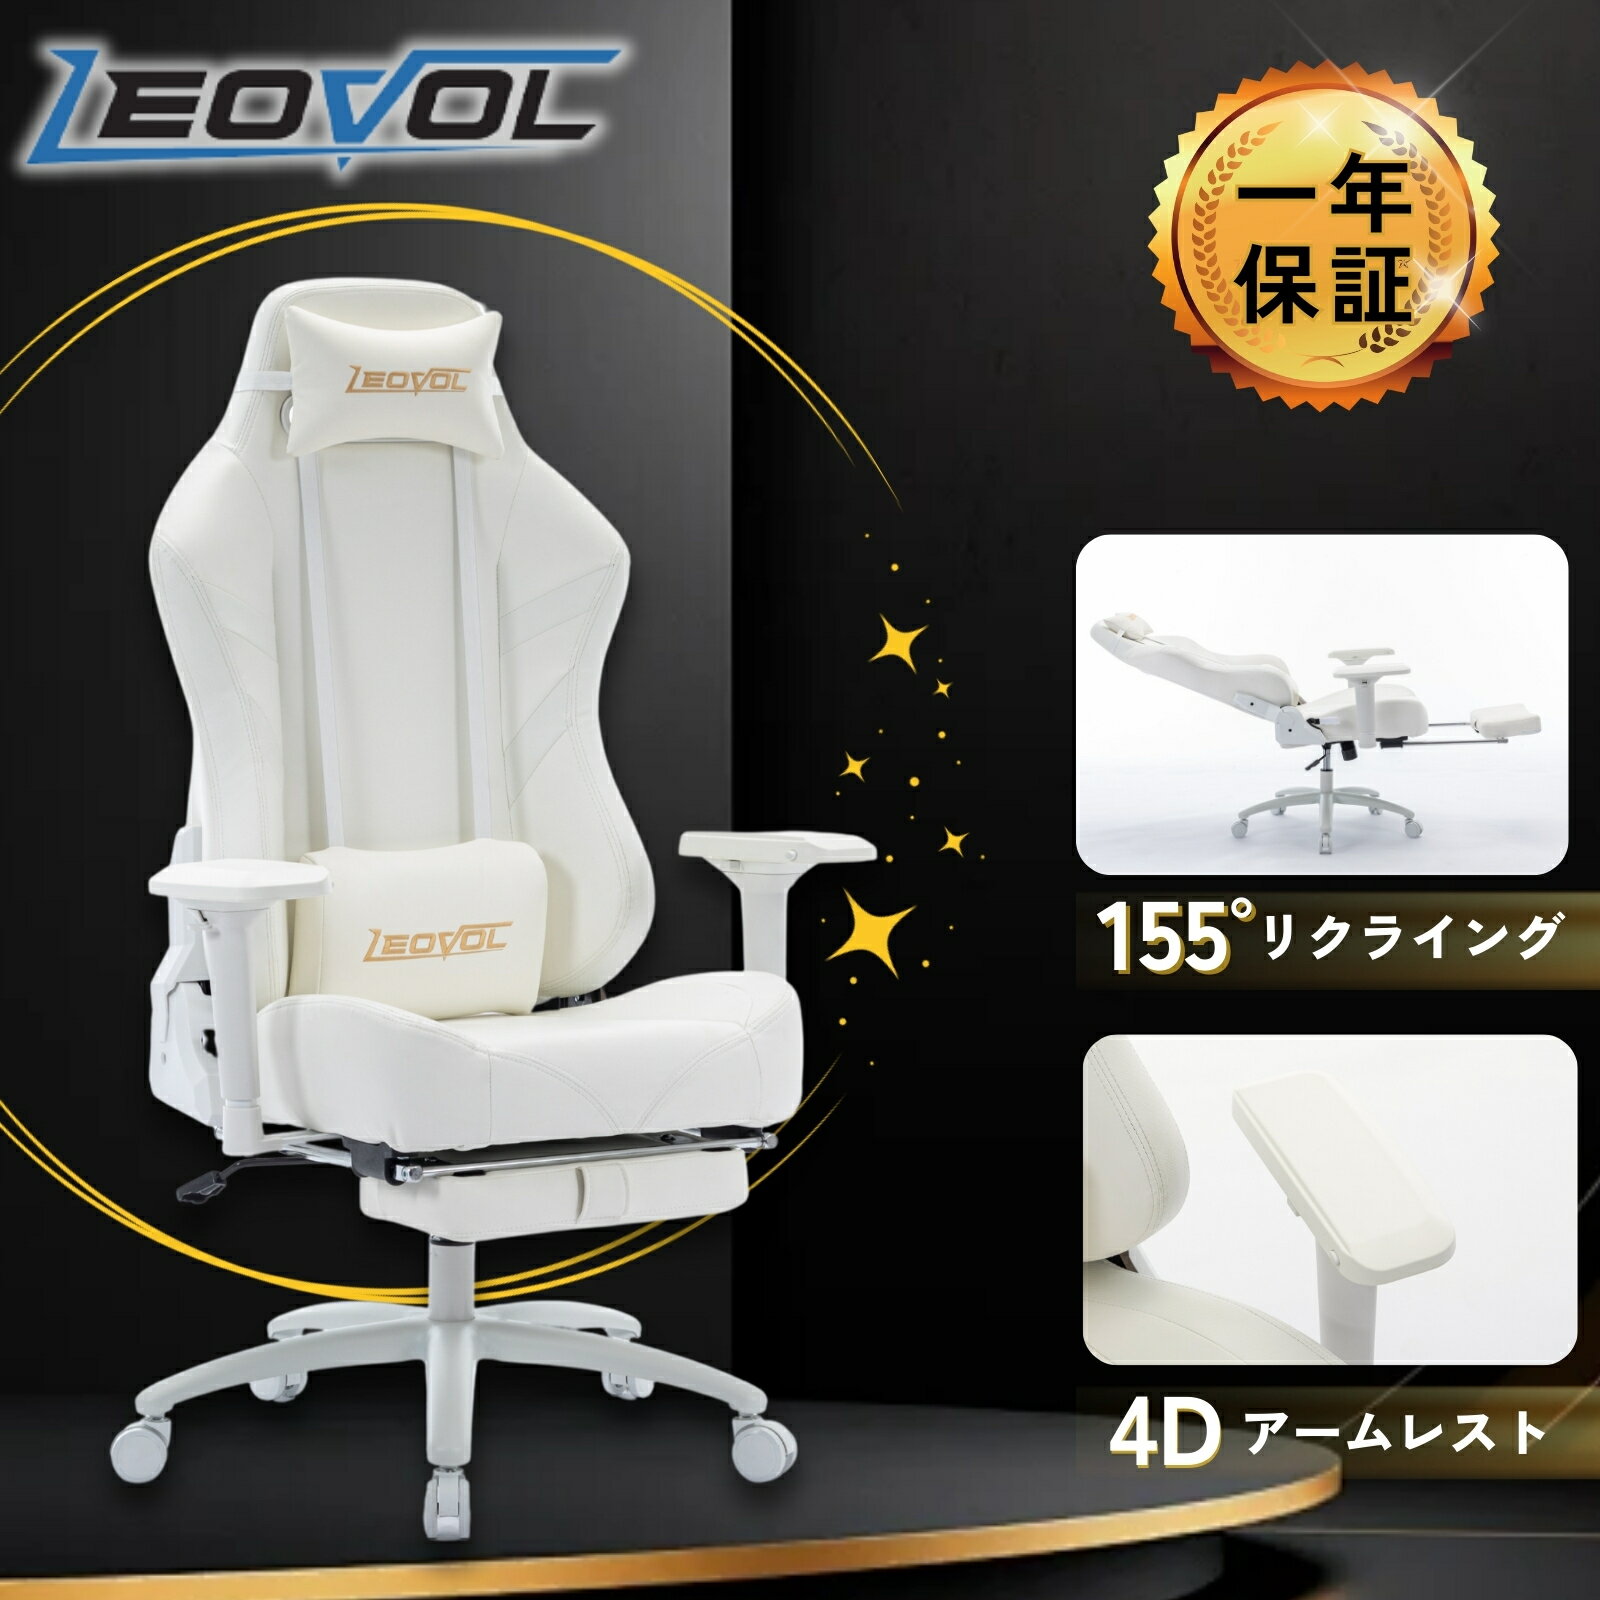 真っ白な椅子が欲しいならコレ!!! ゲーミングチェアー 360°回転 高級P...